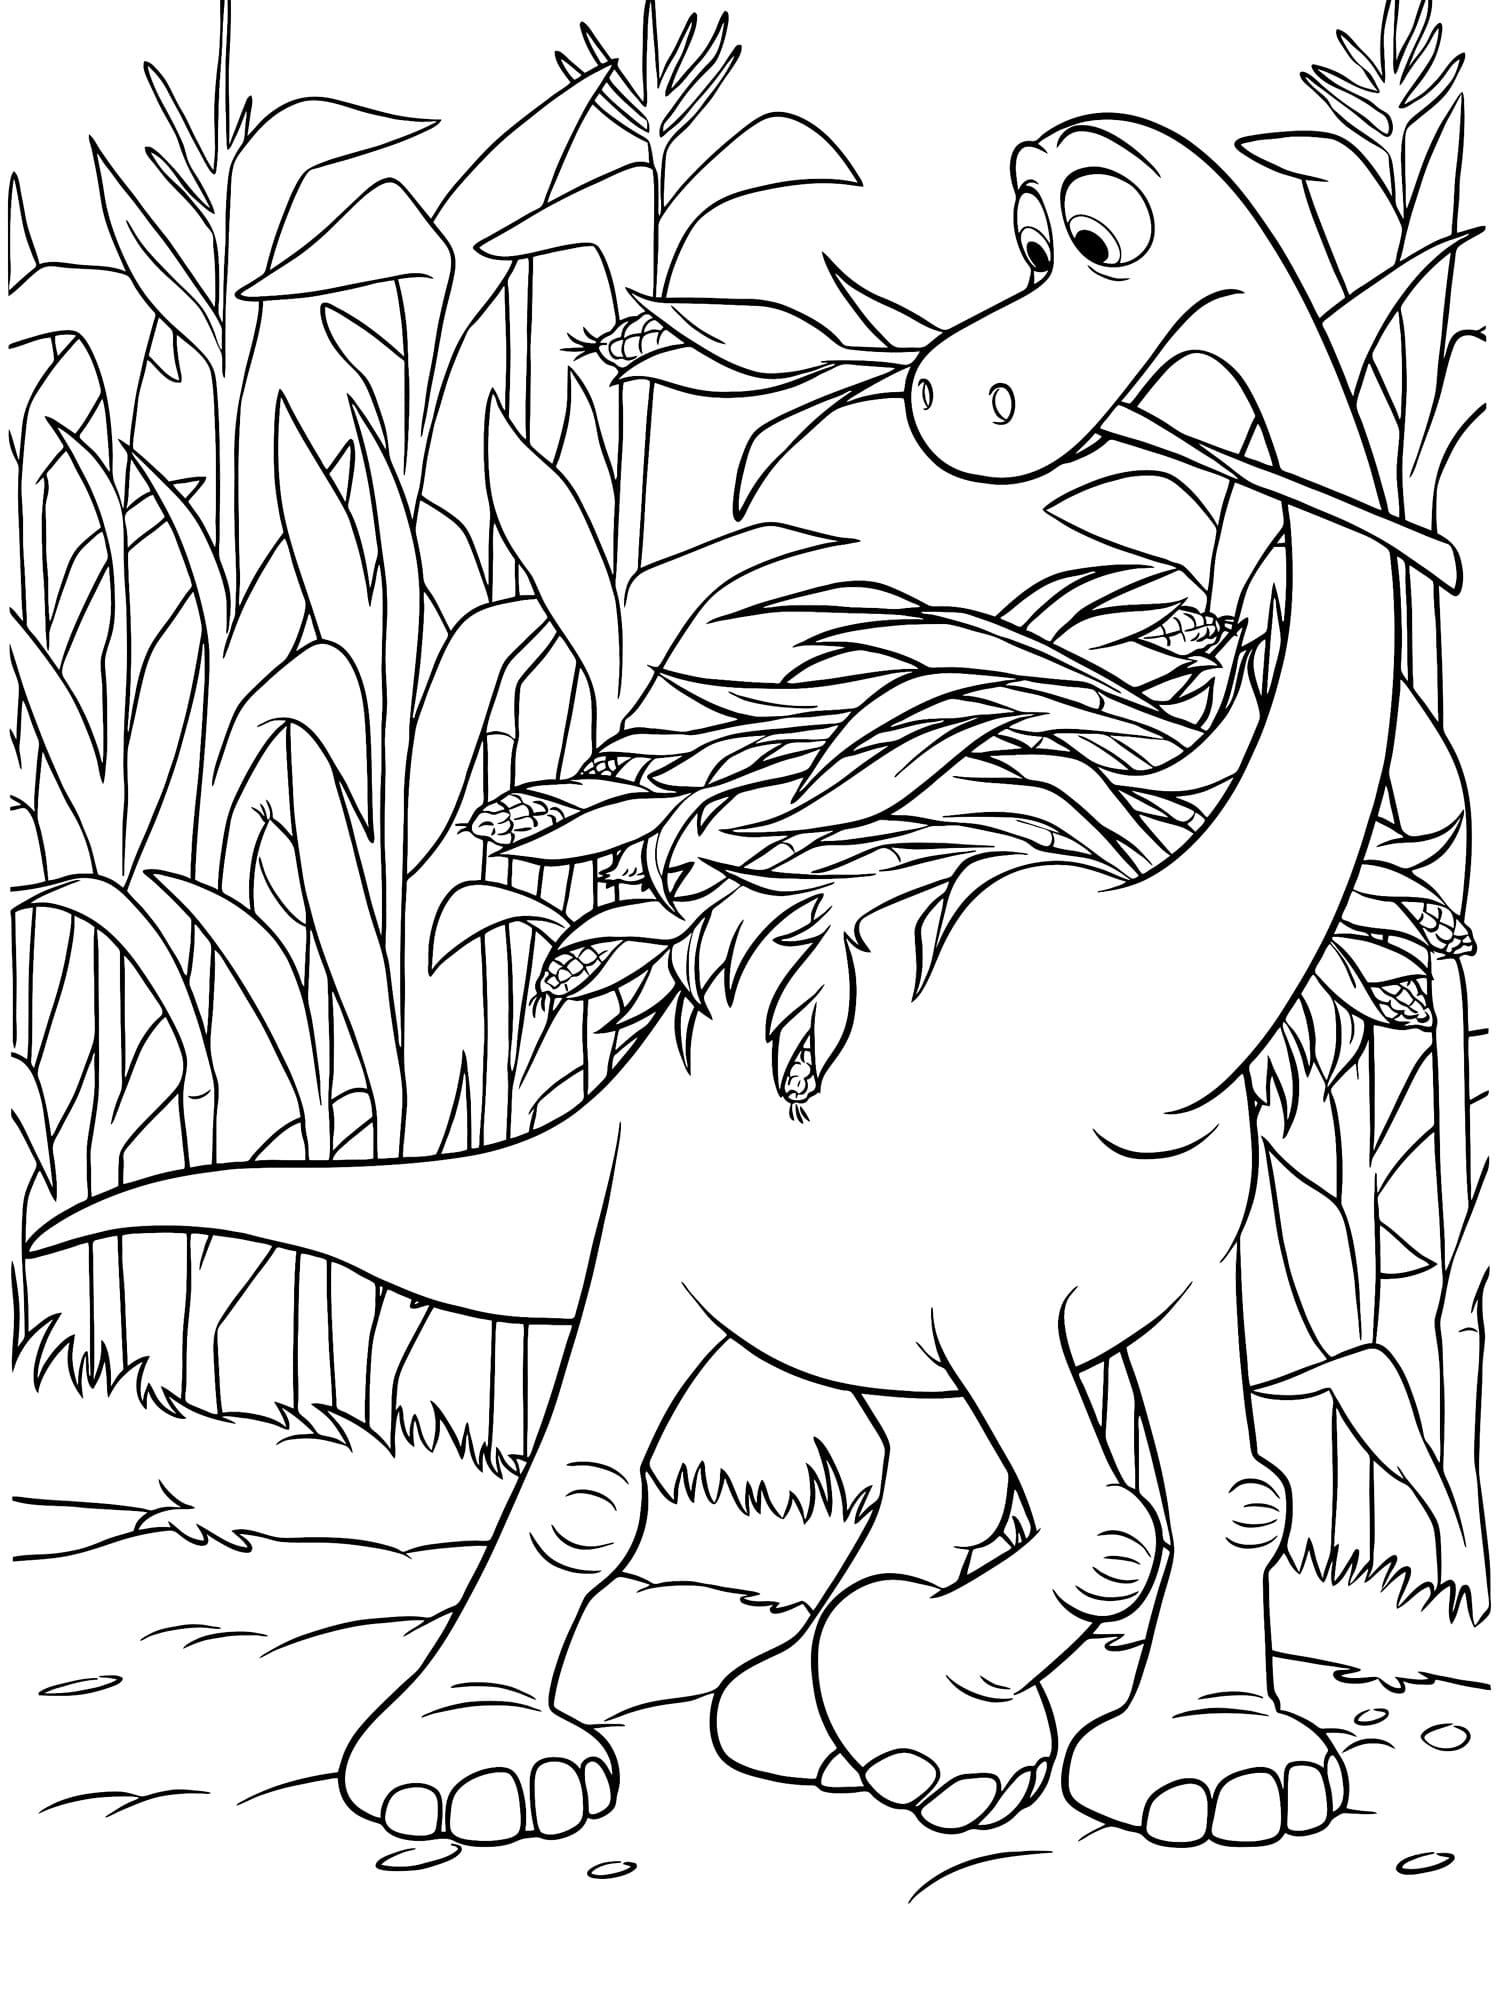 Раскраска Хороший динозавр (12) - Бесплатнo Pаспечатать или Cкачать Oнлайн